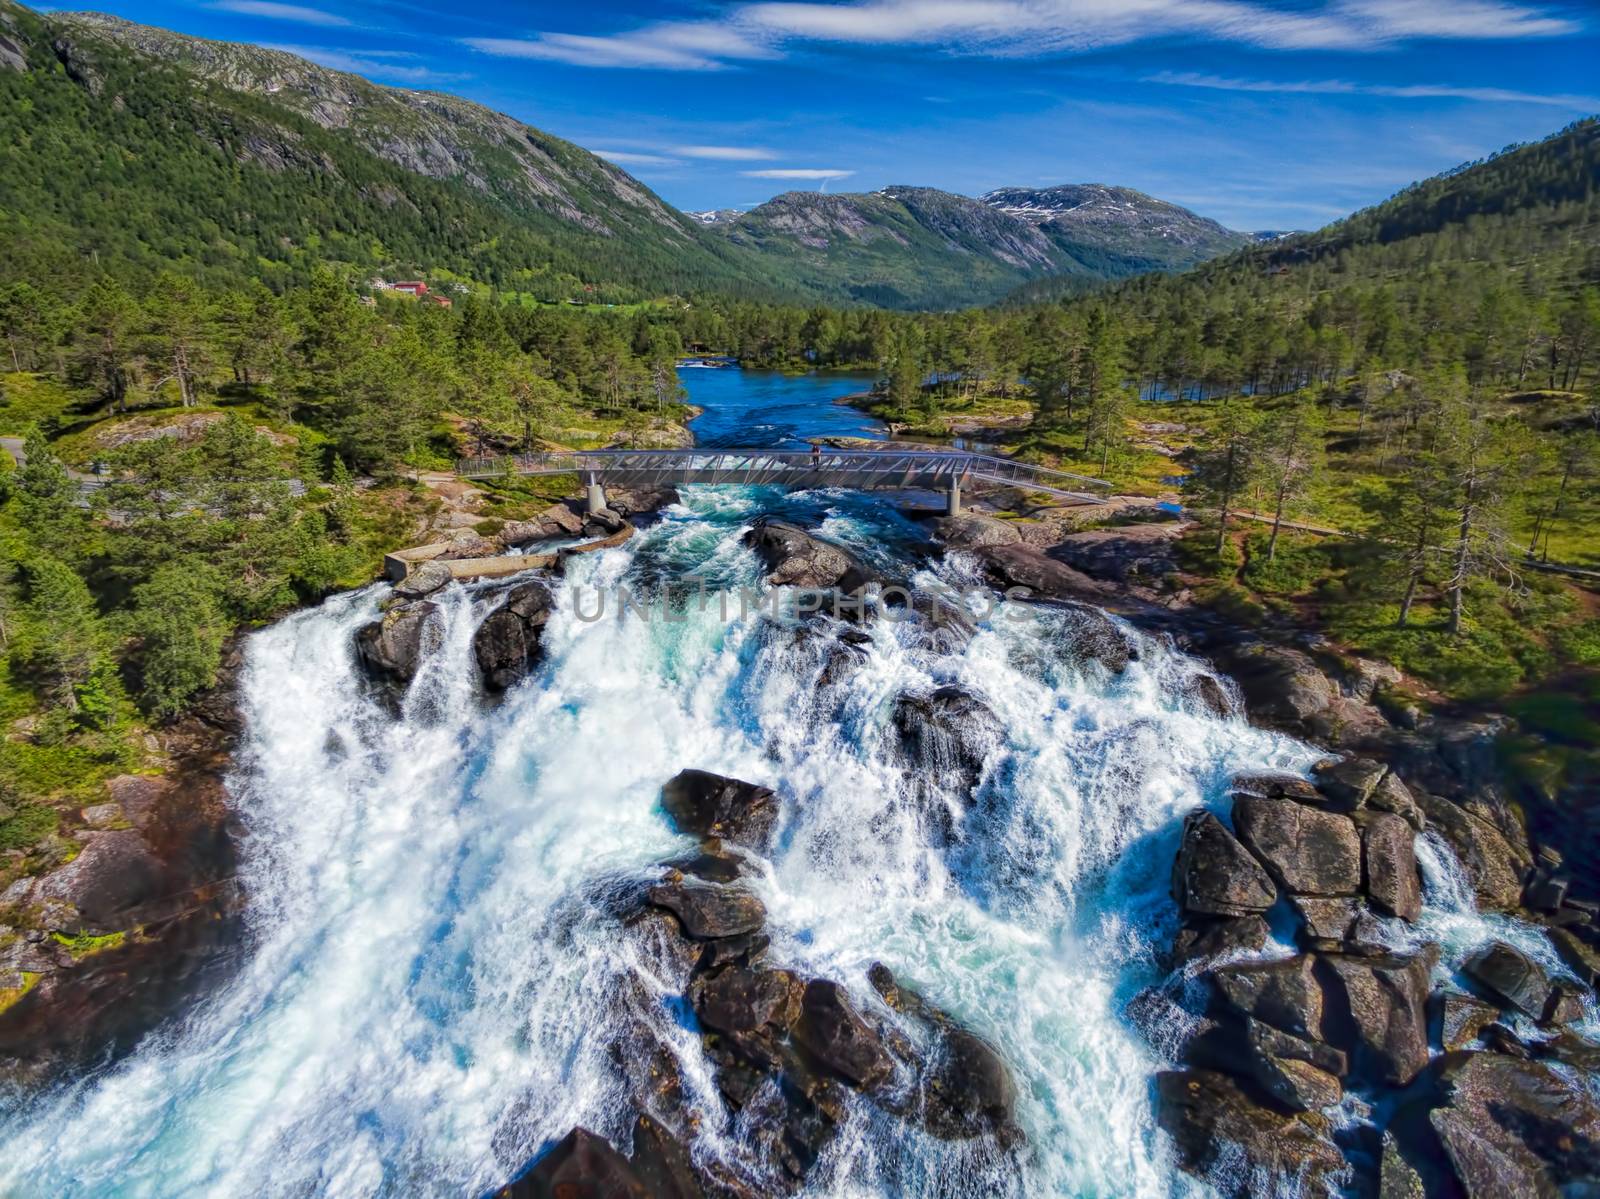 Likholefossen waterfall in Norway by Harvepino